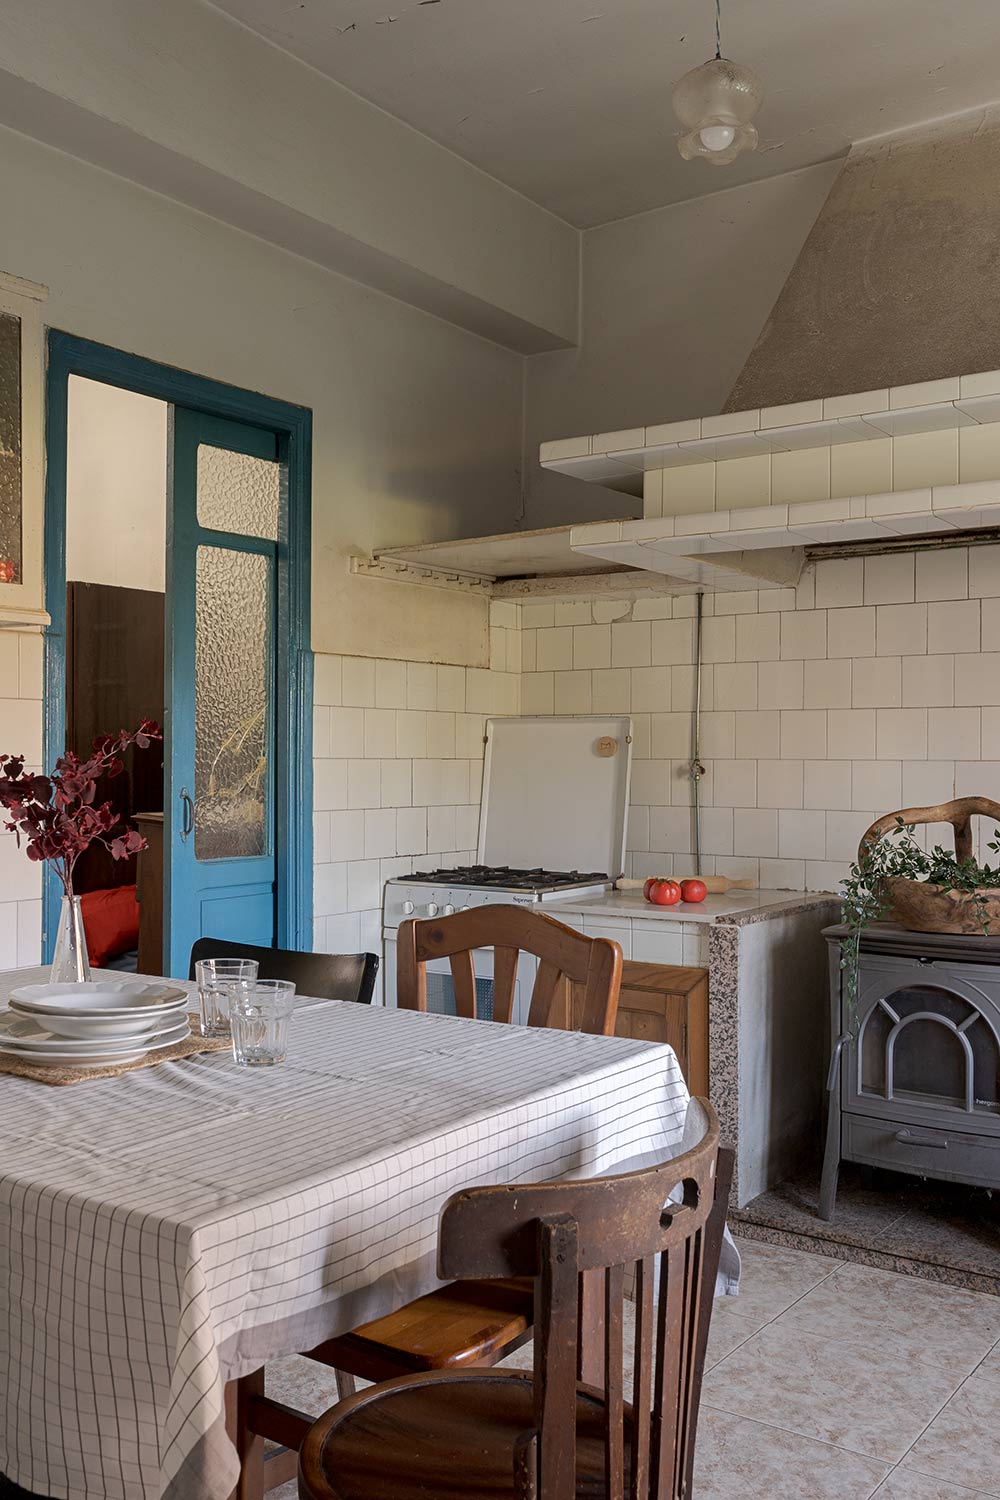 Cocina rústica con mesa de madera, sillas y una estufa antigua, ofreciendo un ambiente tradicional y acogedor en una casa de Bergondo, A Coruña